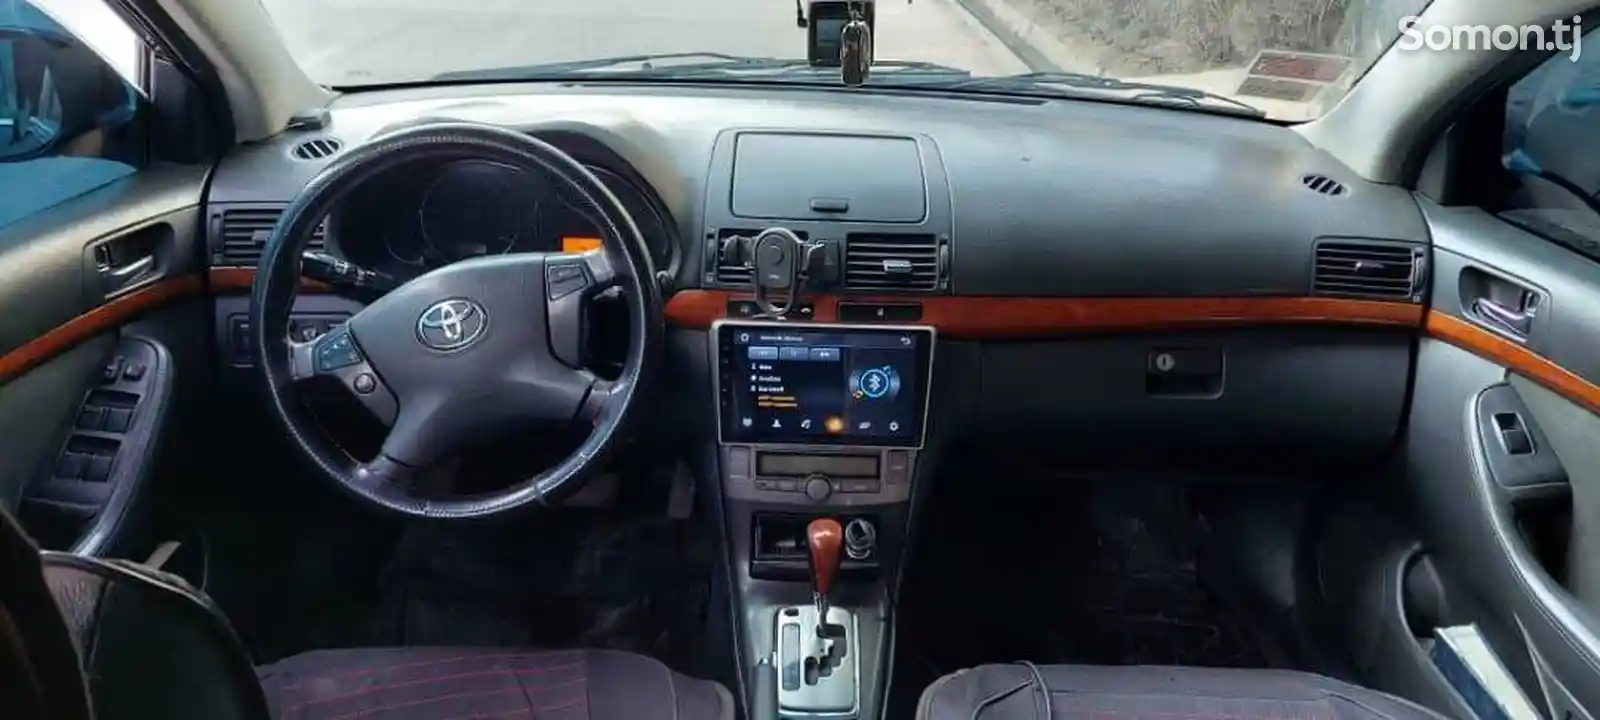 Toyota Avensis, 2007-3